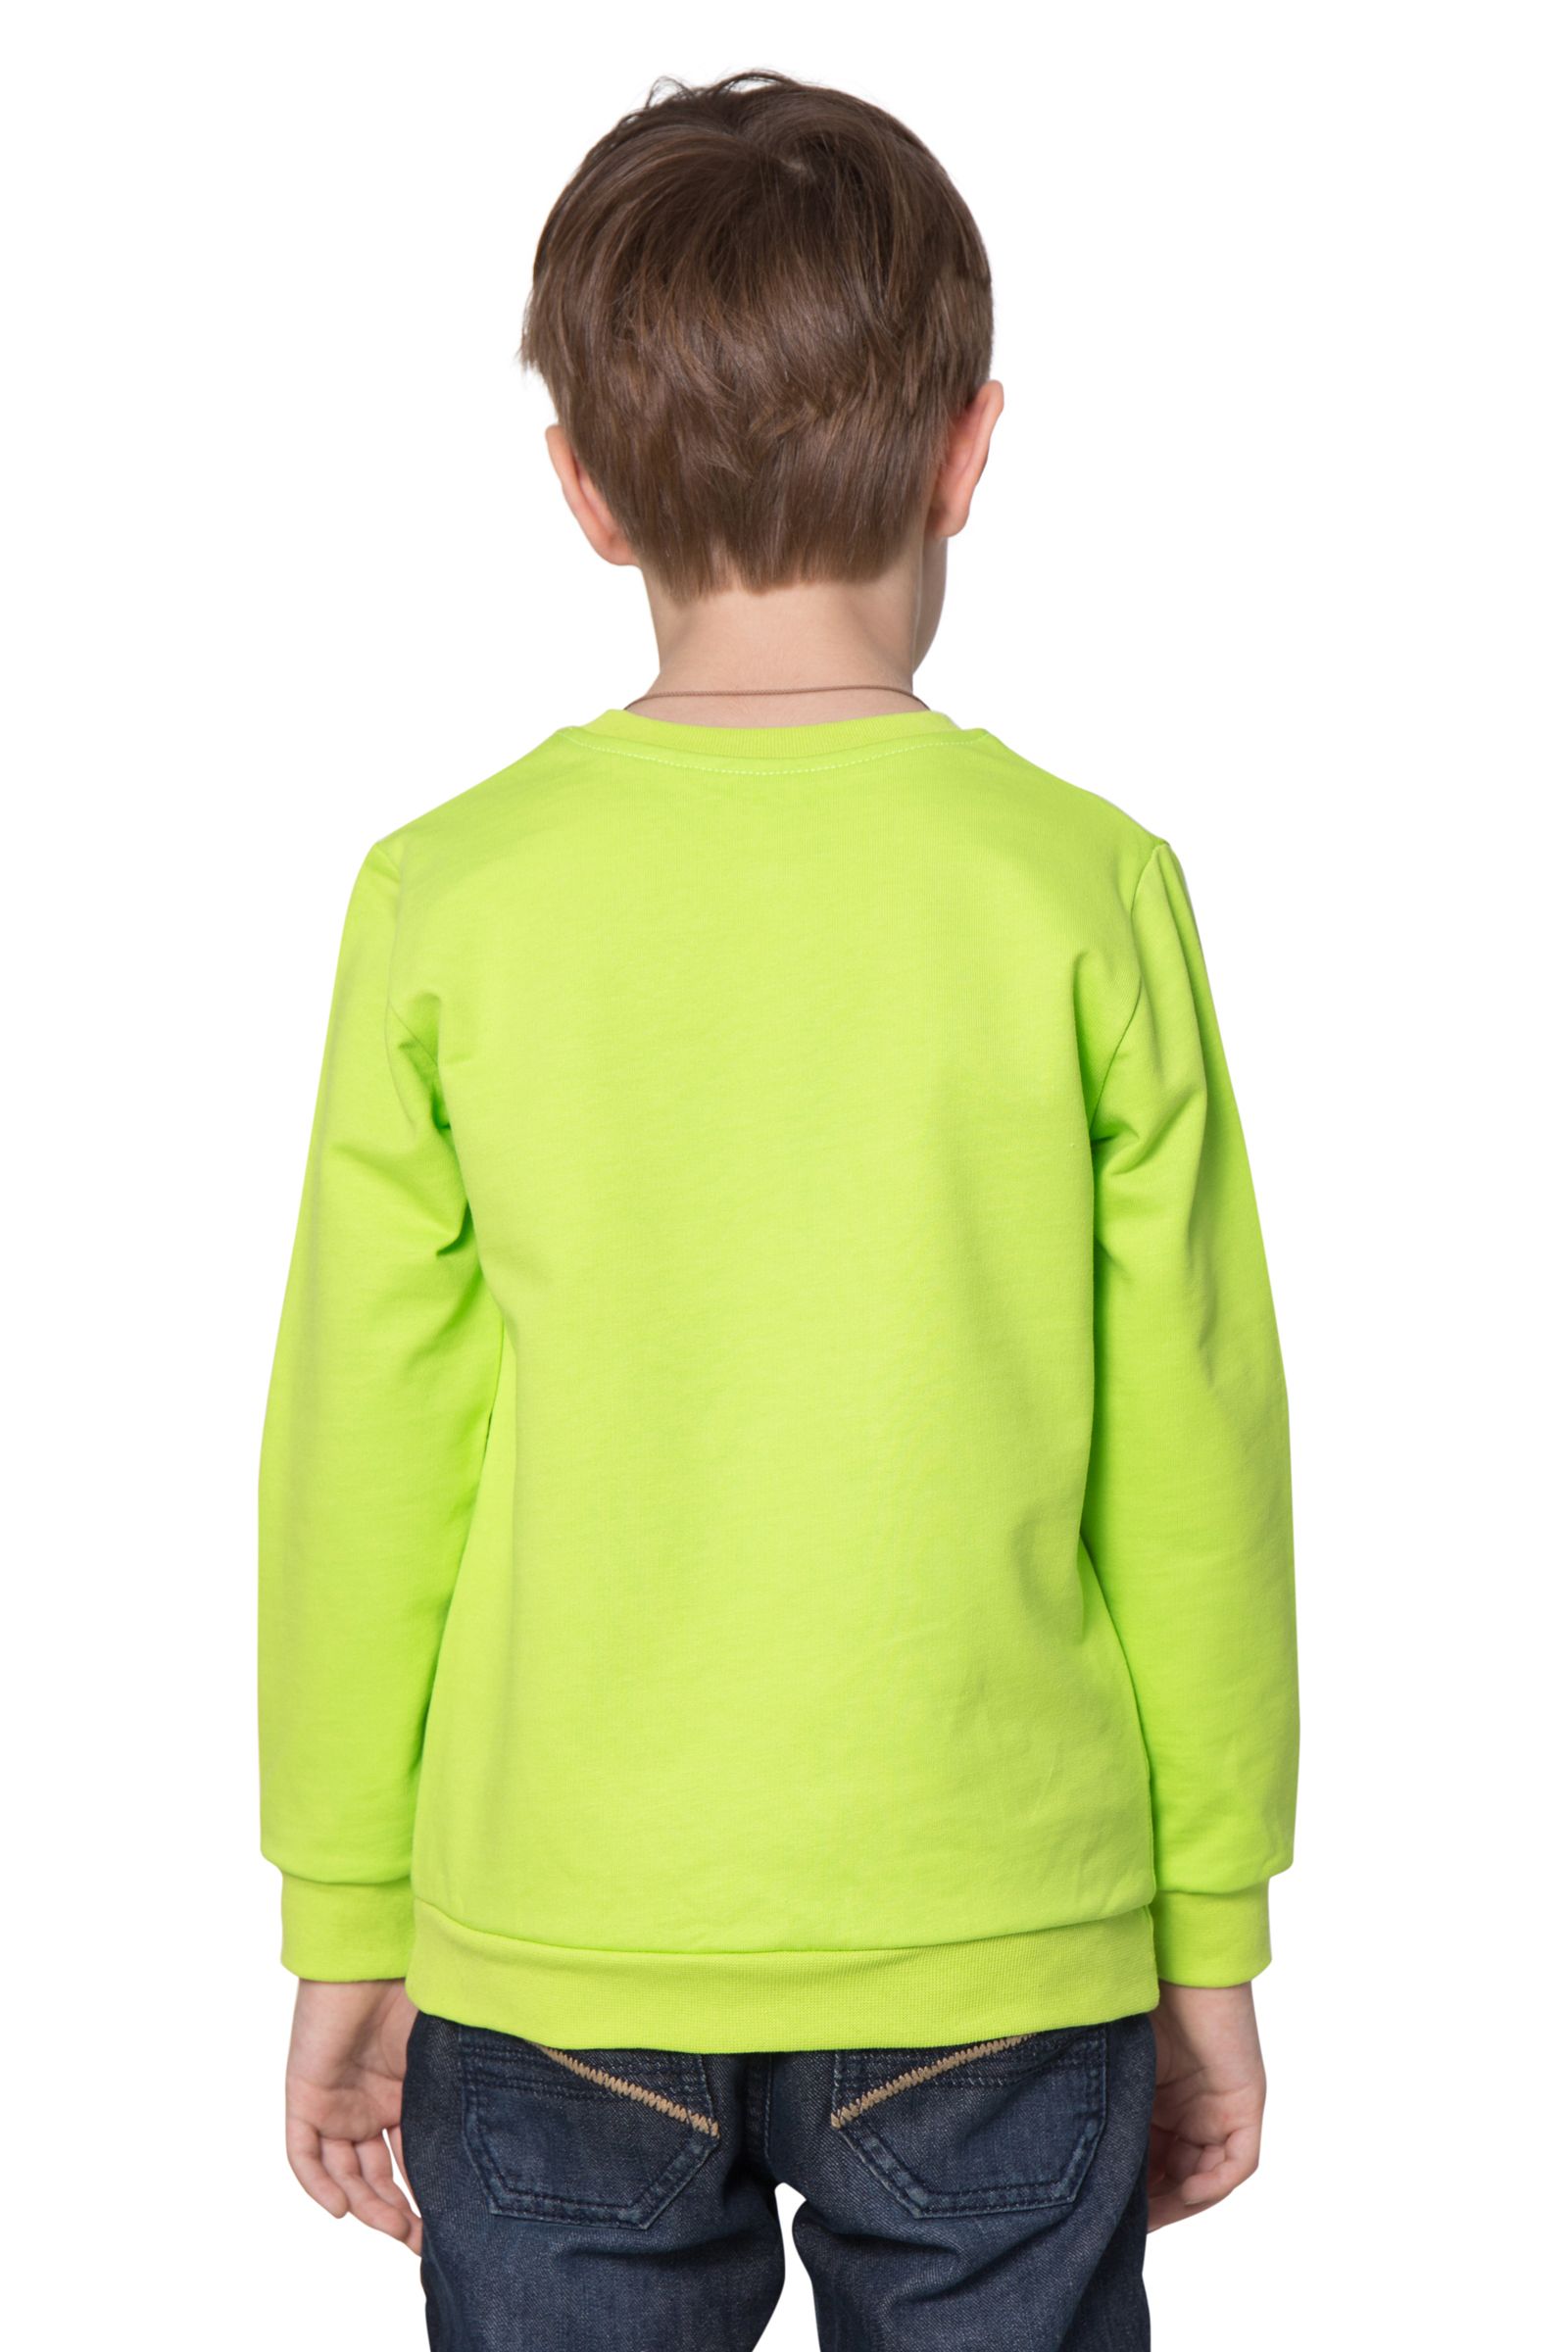 Свитшот-ДЖ05-3218 оптом от производителя детской одежды 'Алёна'